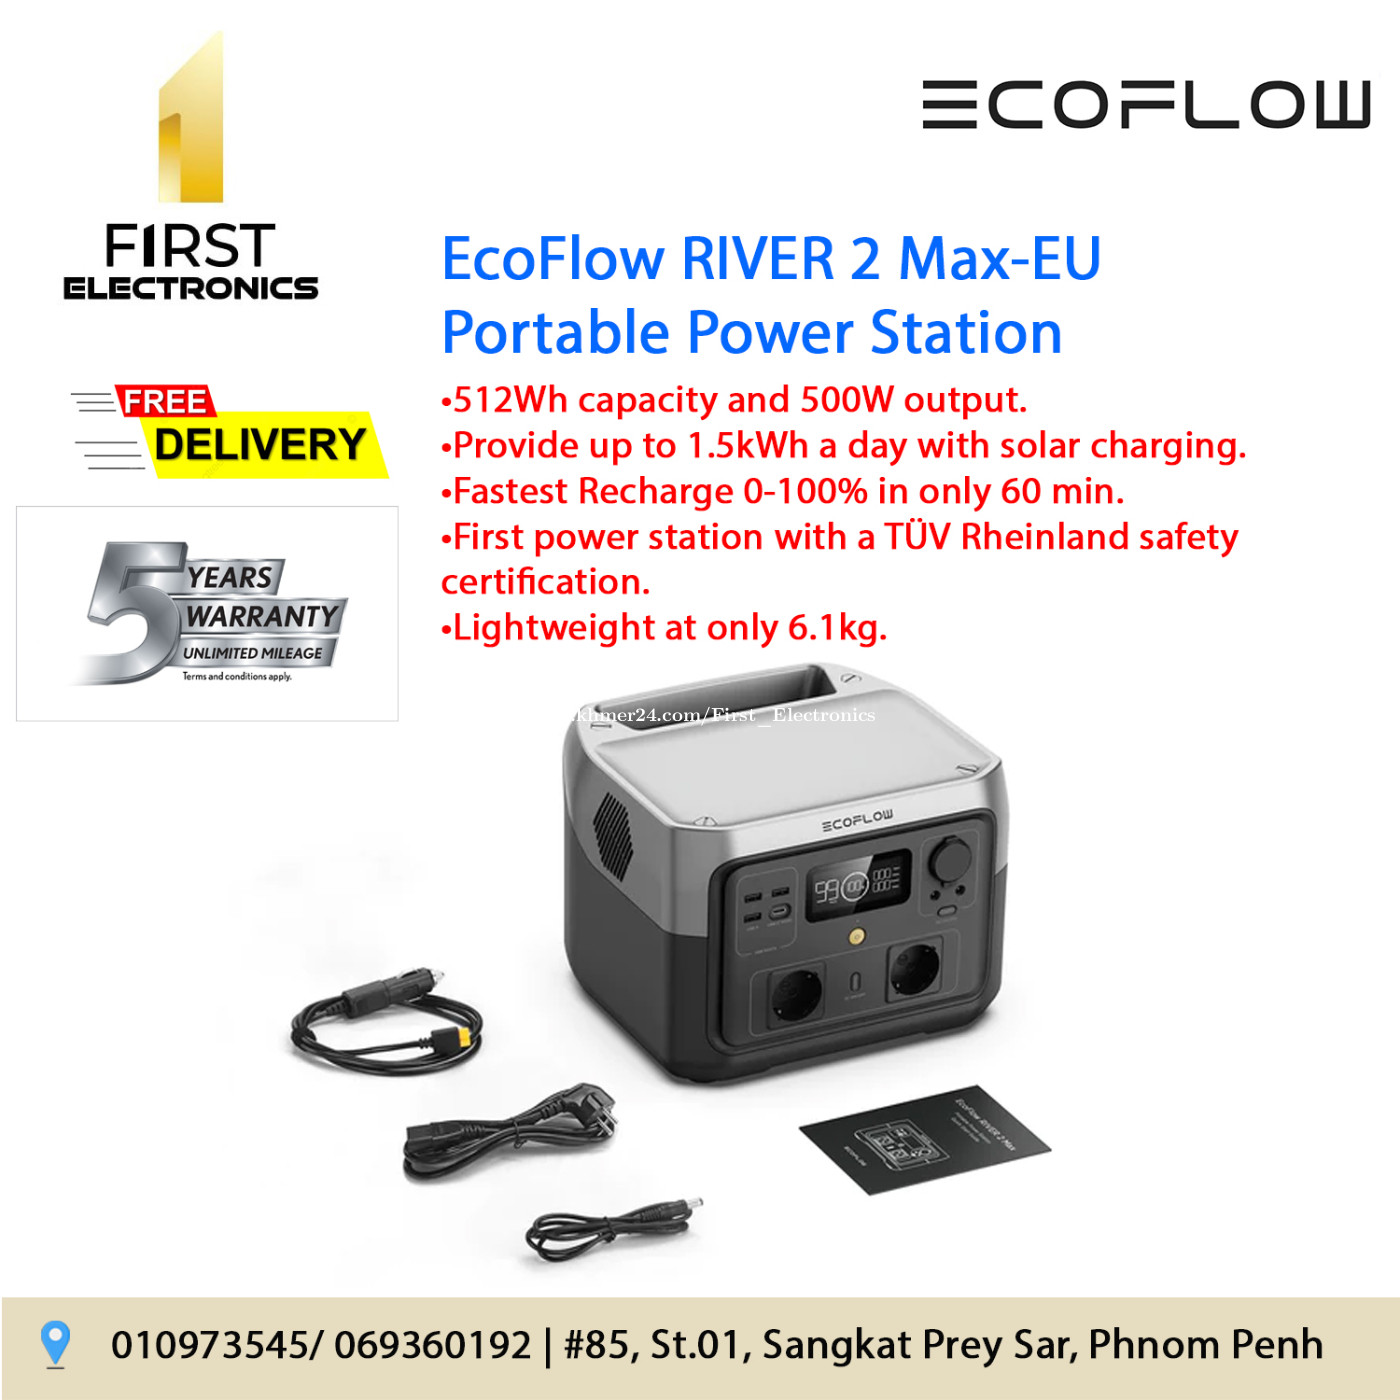 Ecoflow River 2 Portable Power Station - EU Version